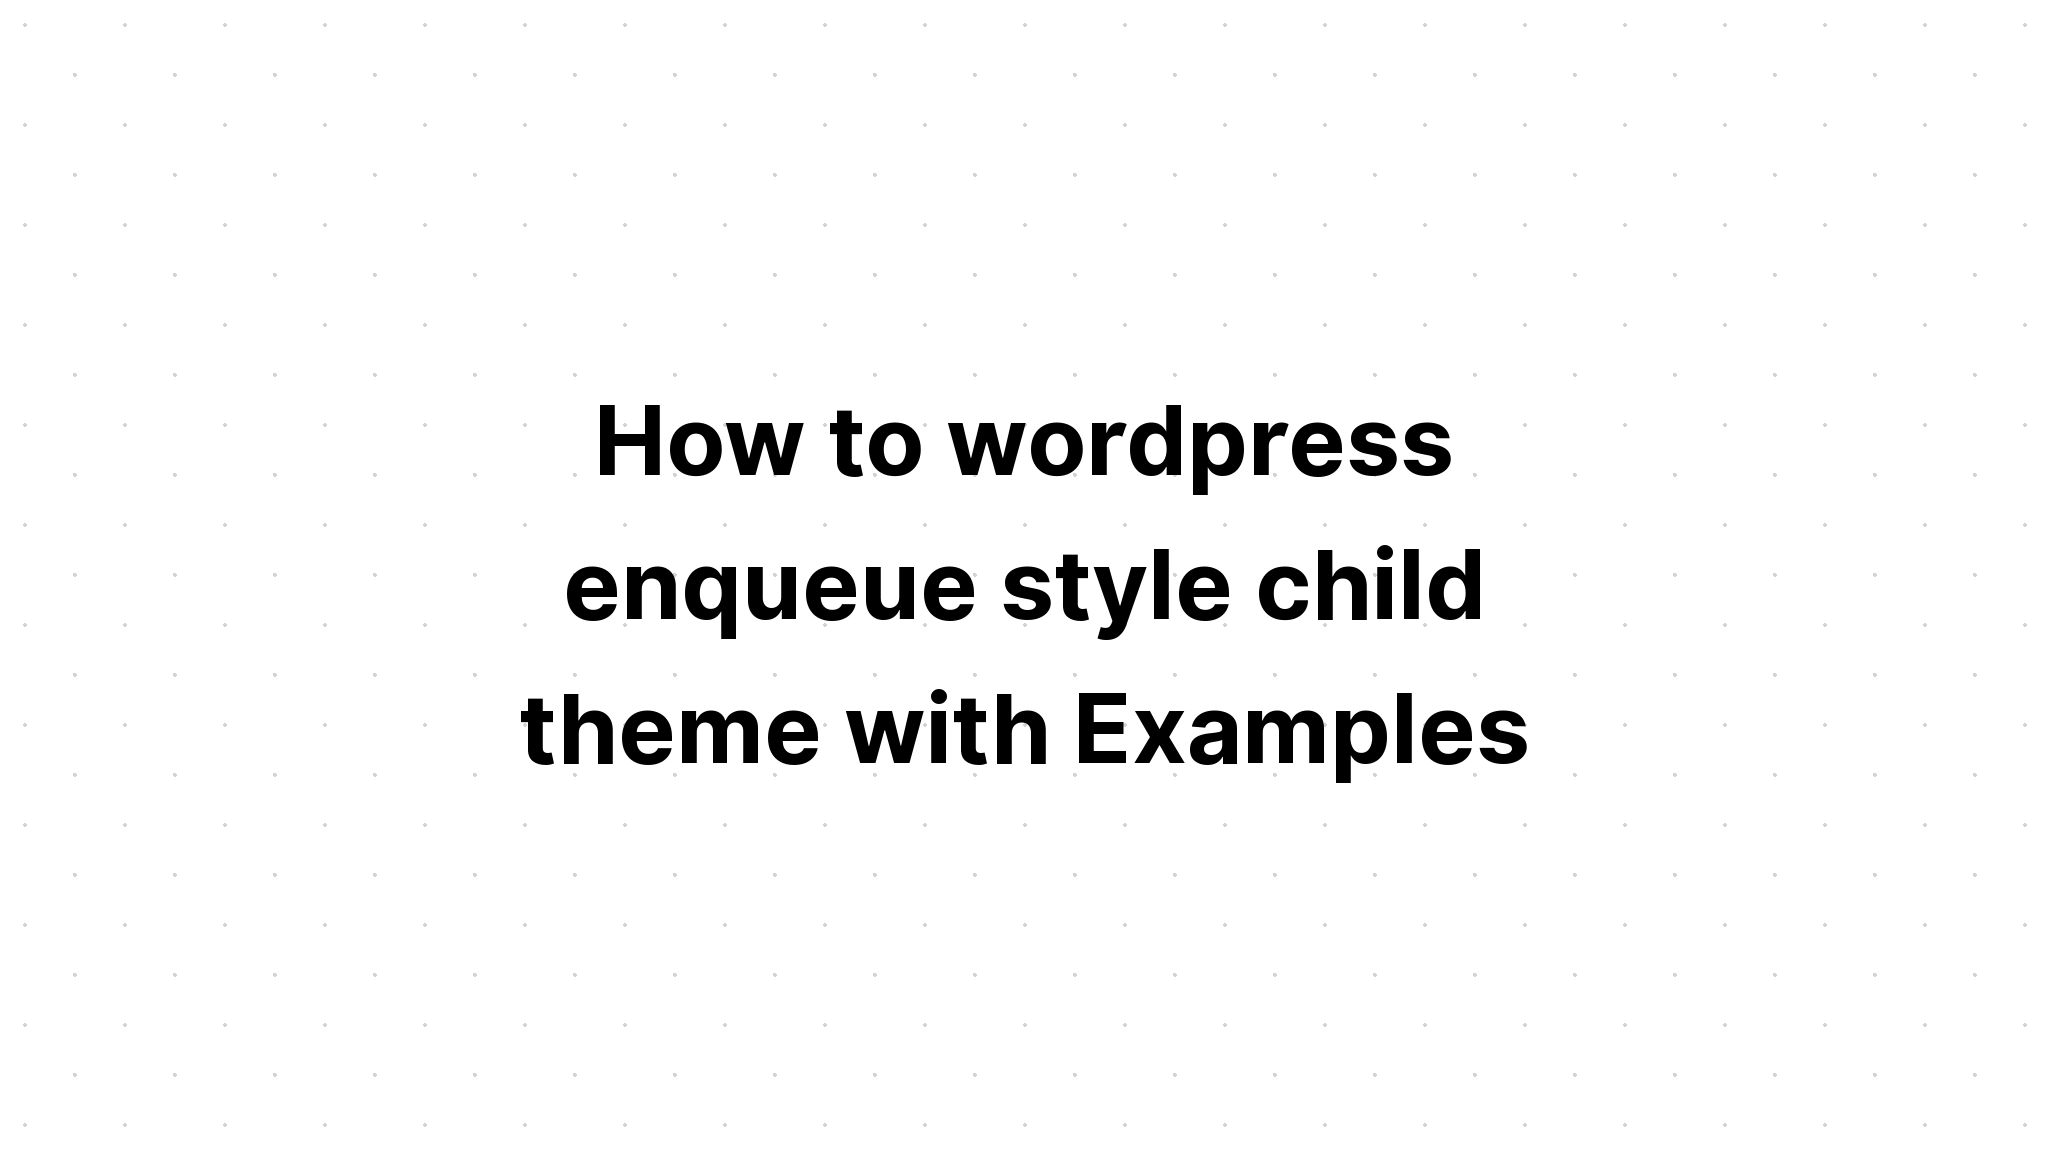 Cách tạo chủ đề con theo phong cách enqueue của wordpress với các ví dụ